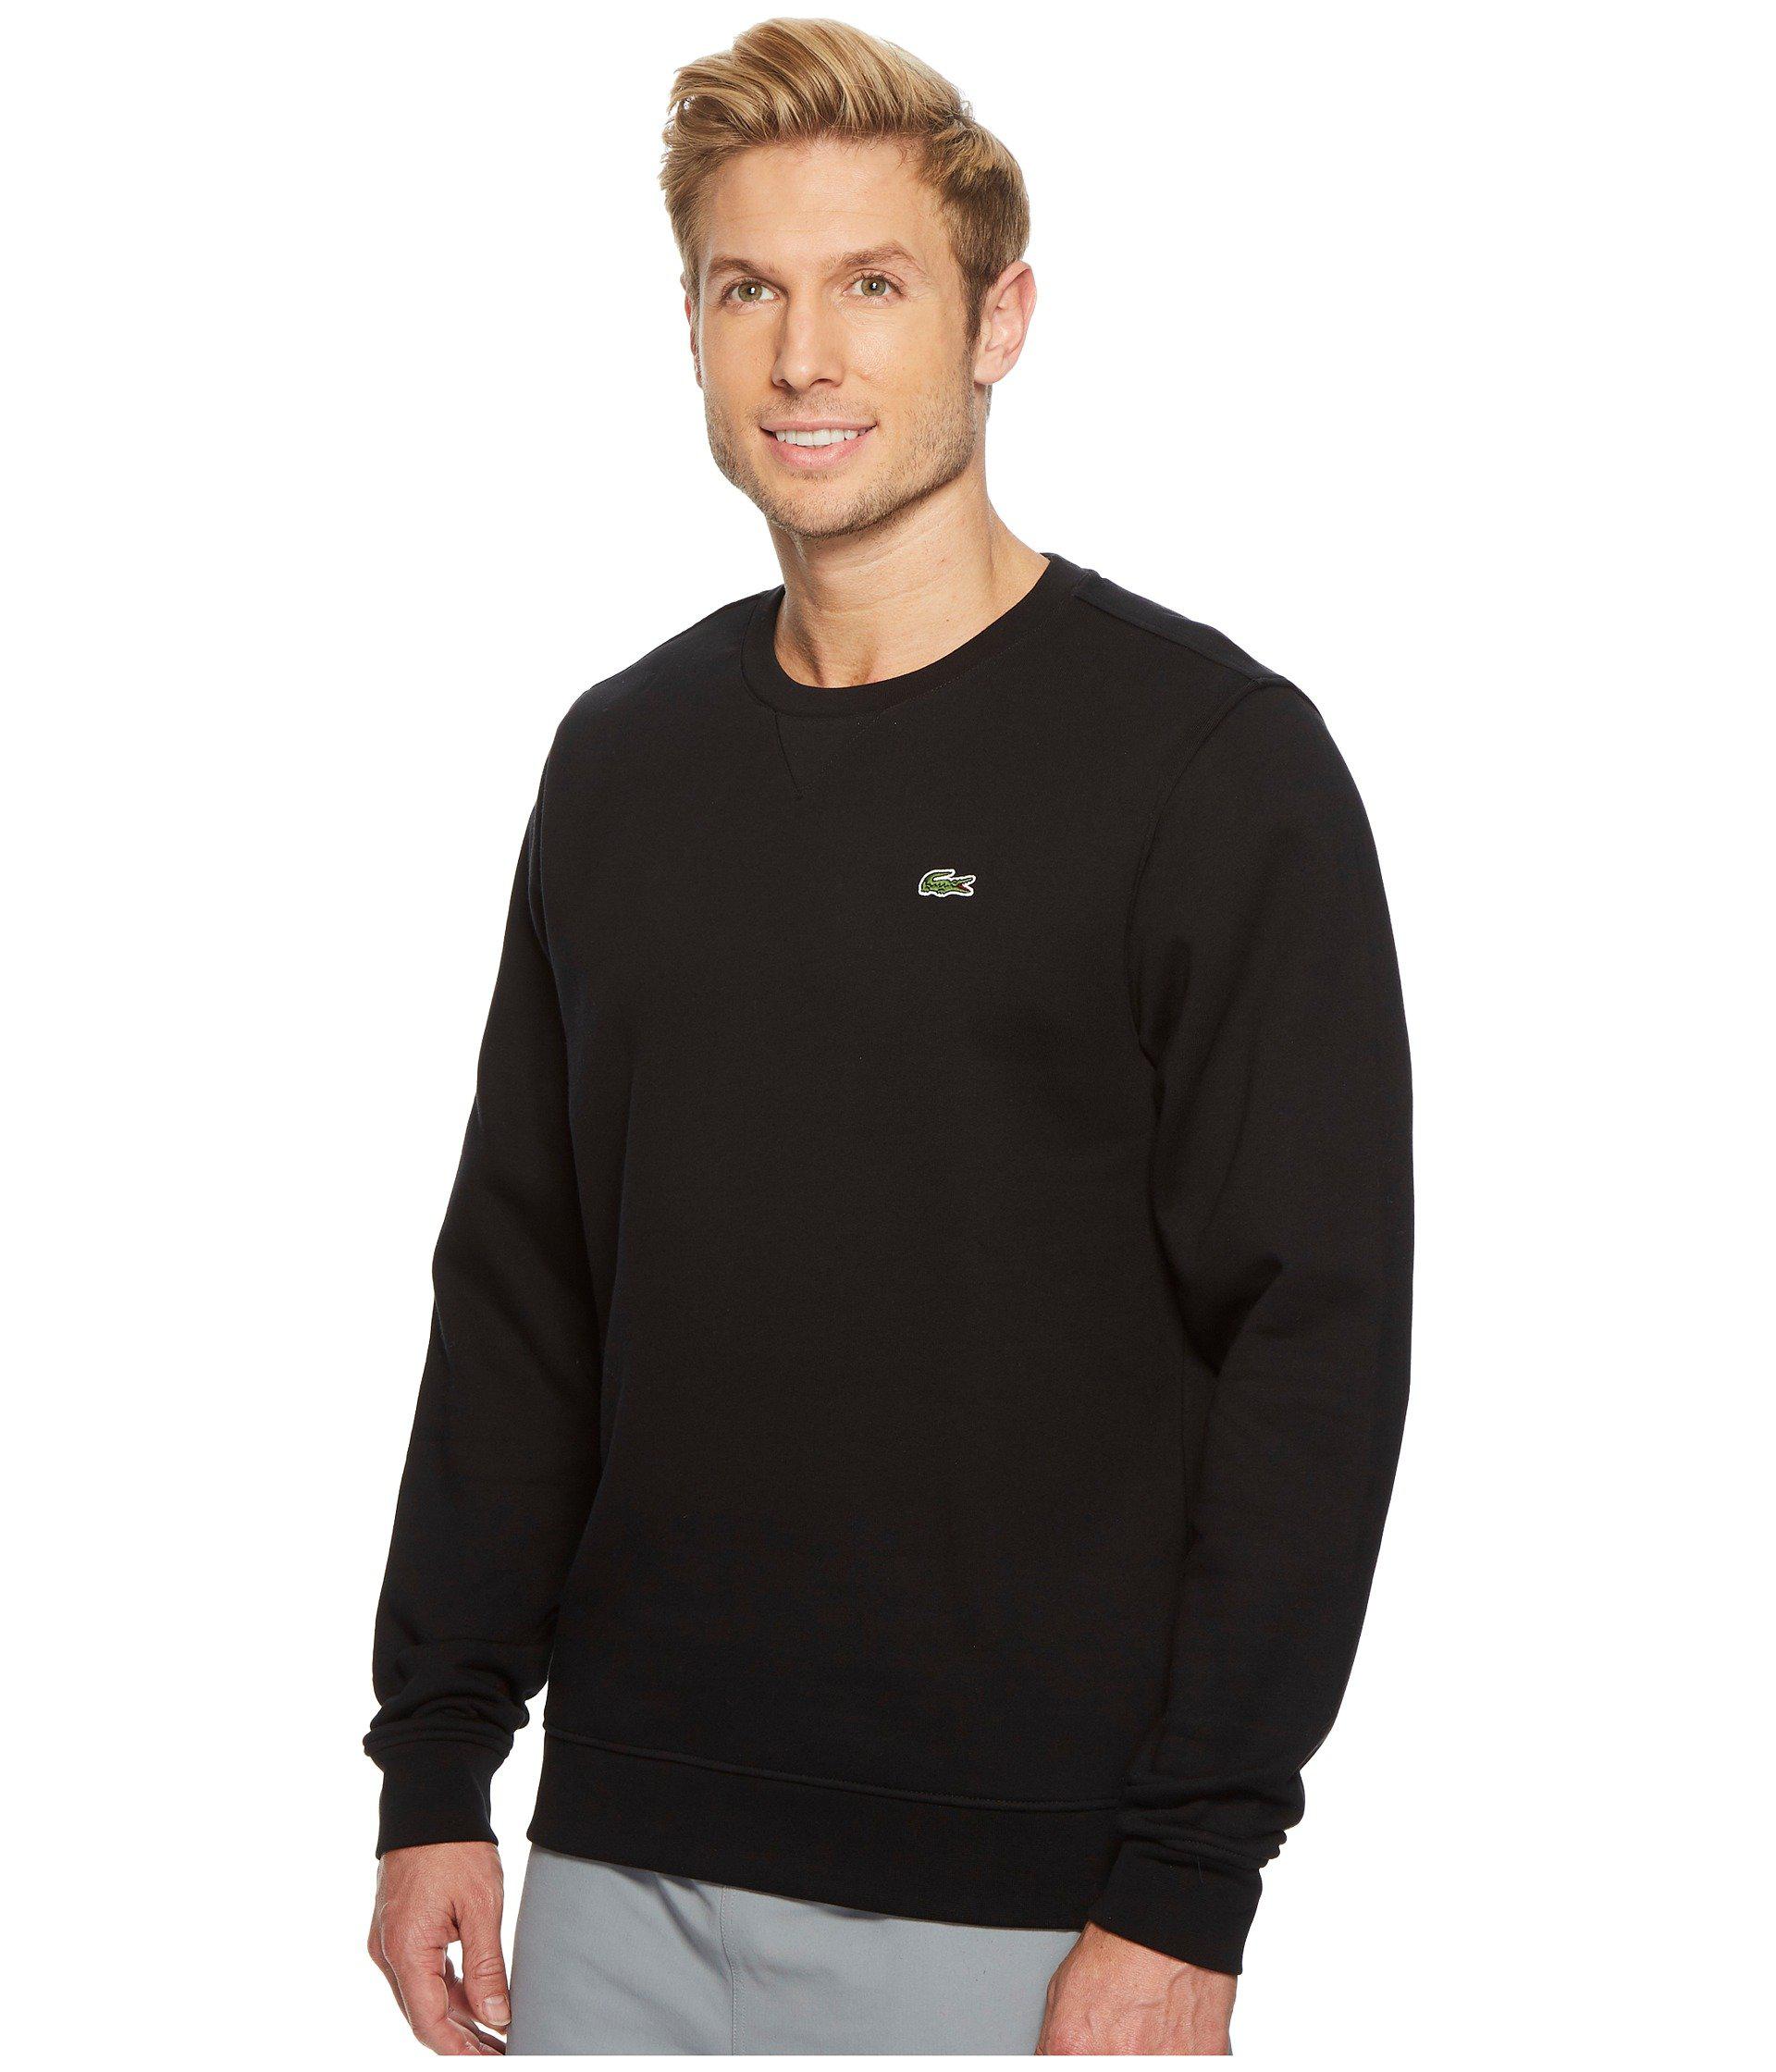 Lacoste Sport Crew Neck Fleece Sweatshirt in Black for Men - Lyst